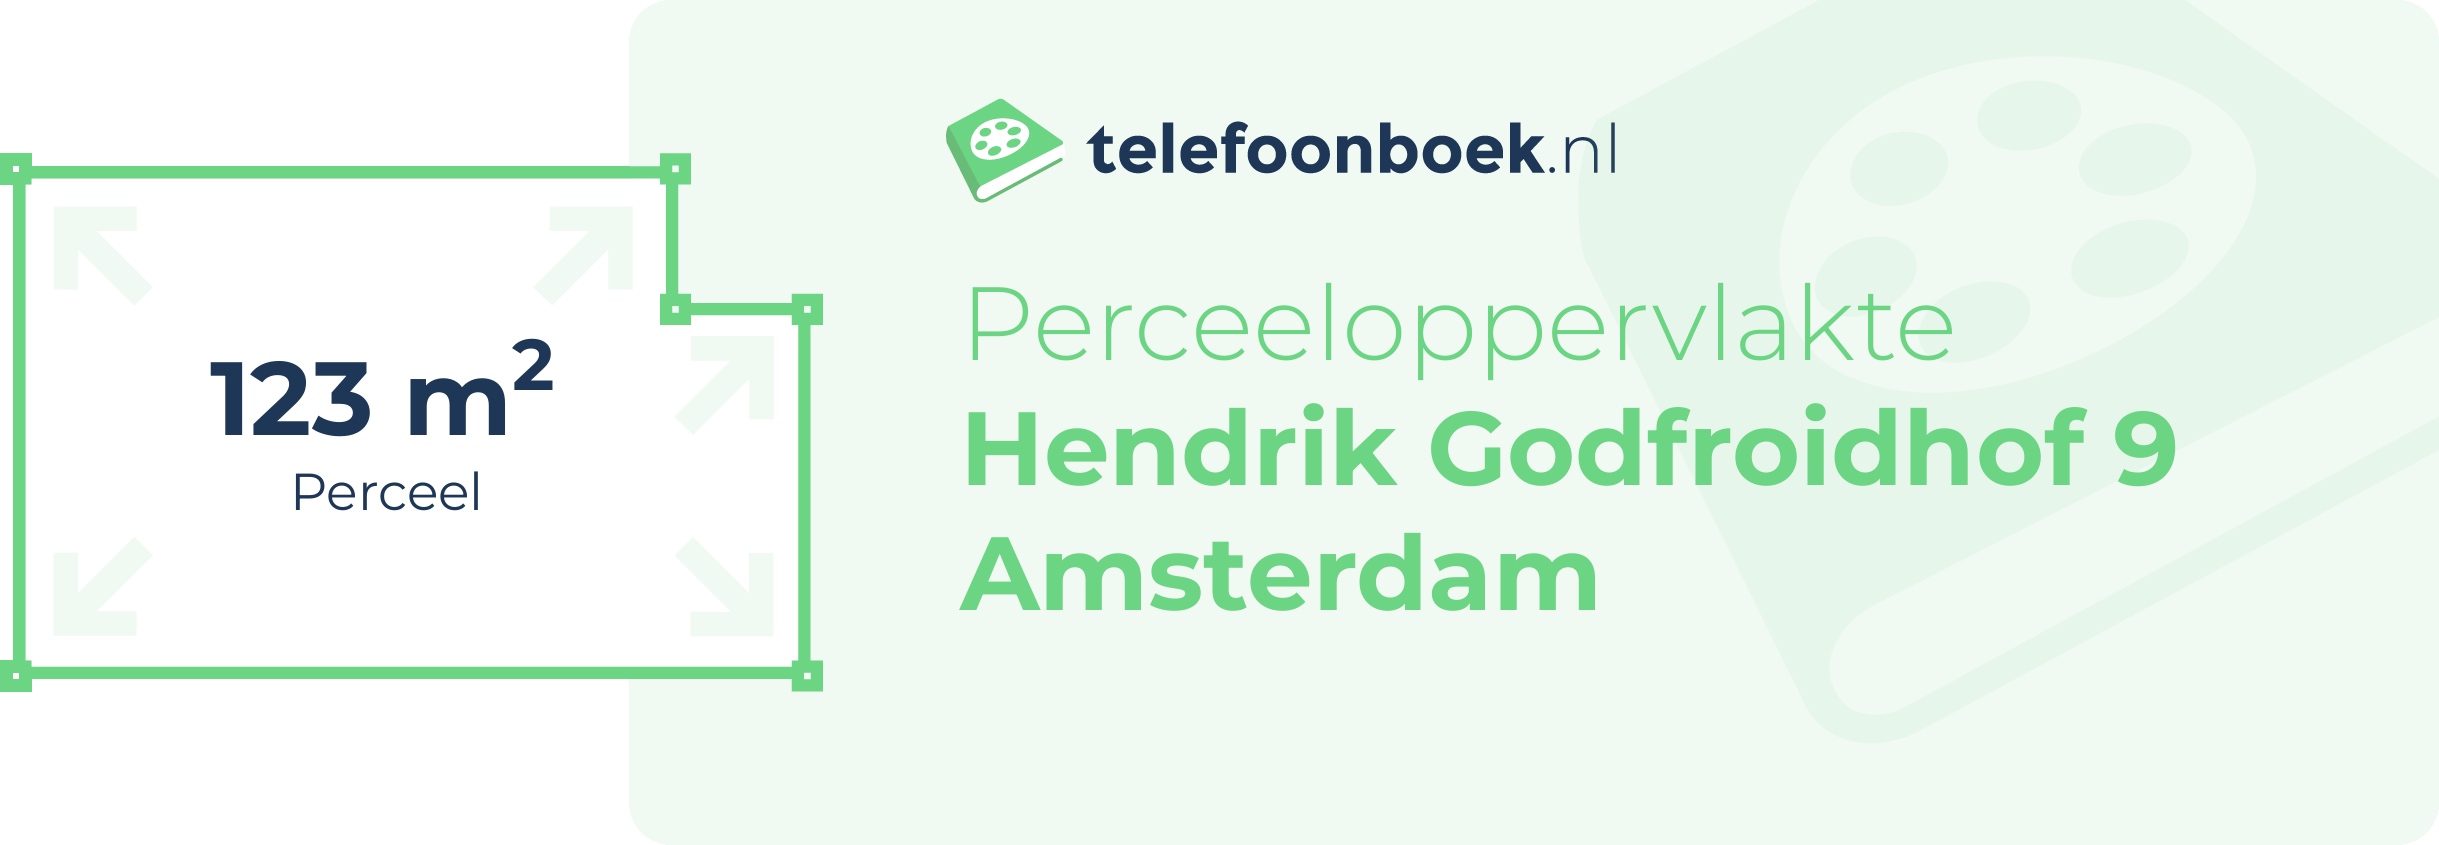 Perceeloppervlakte Hendrik Godfroidhof 9 Amsterdam